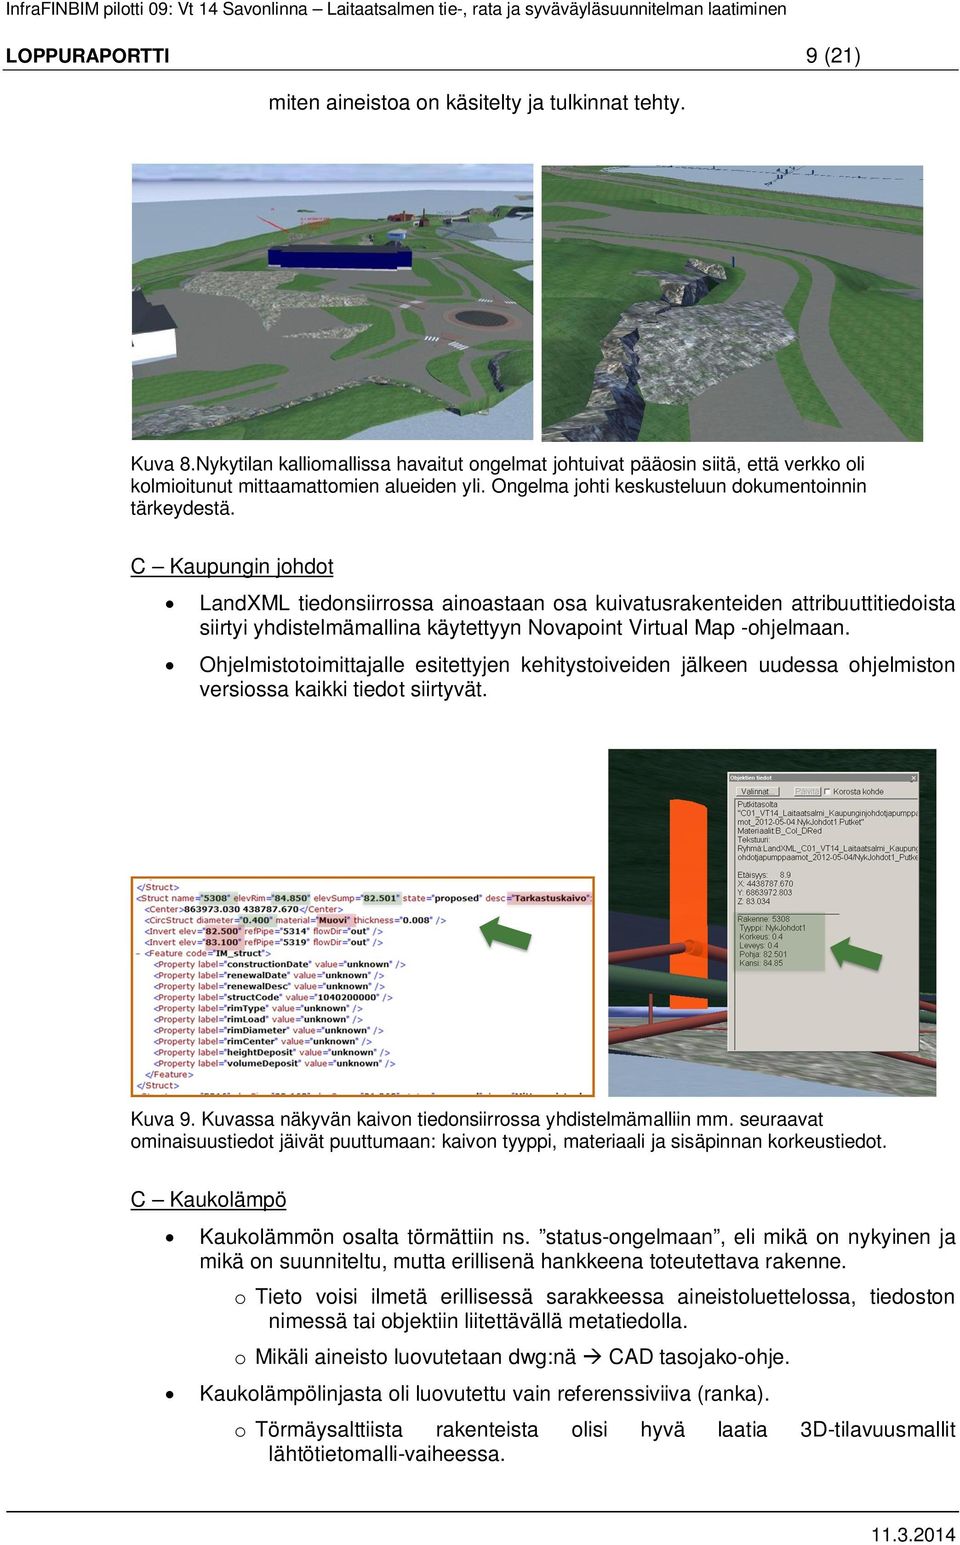 C Kaupungin johdot LandXML tiedonsiirrossa ainoastaan osa kuivatusrakenteiden attribuuttitiedoista siirtyi yhdistelmämallina käytettyyn Novapoint Virtual Map -ohjelmaan.